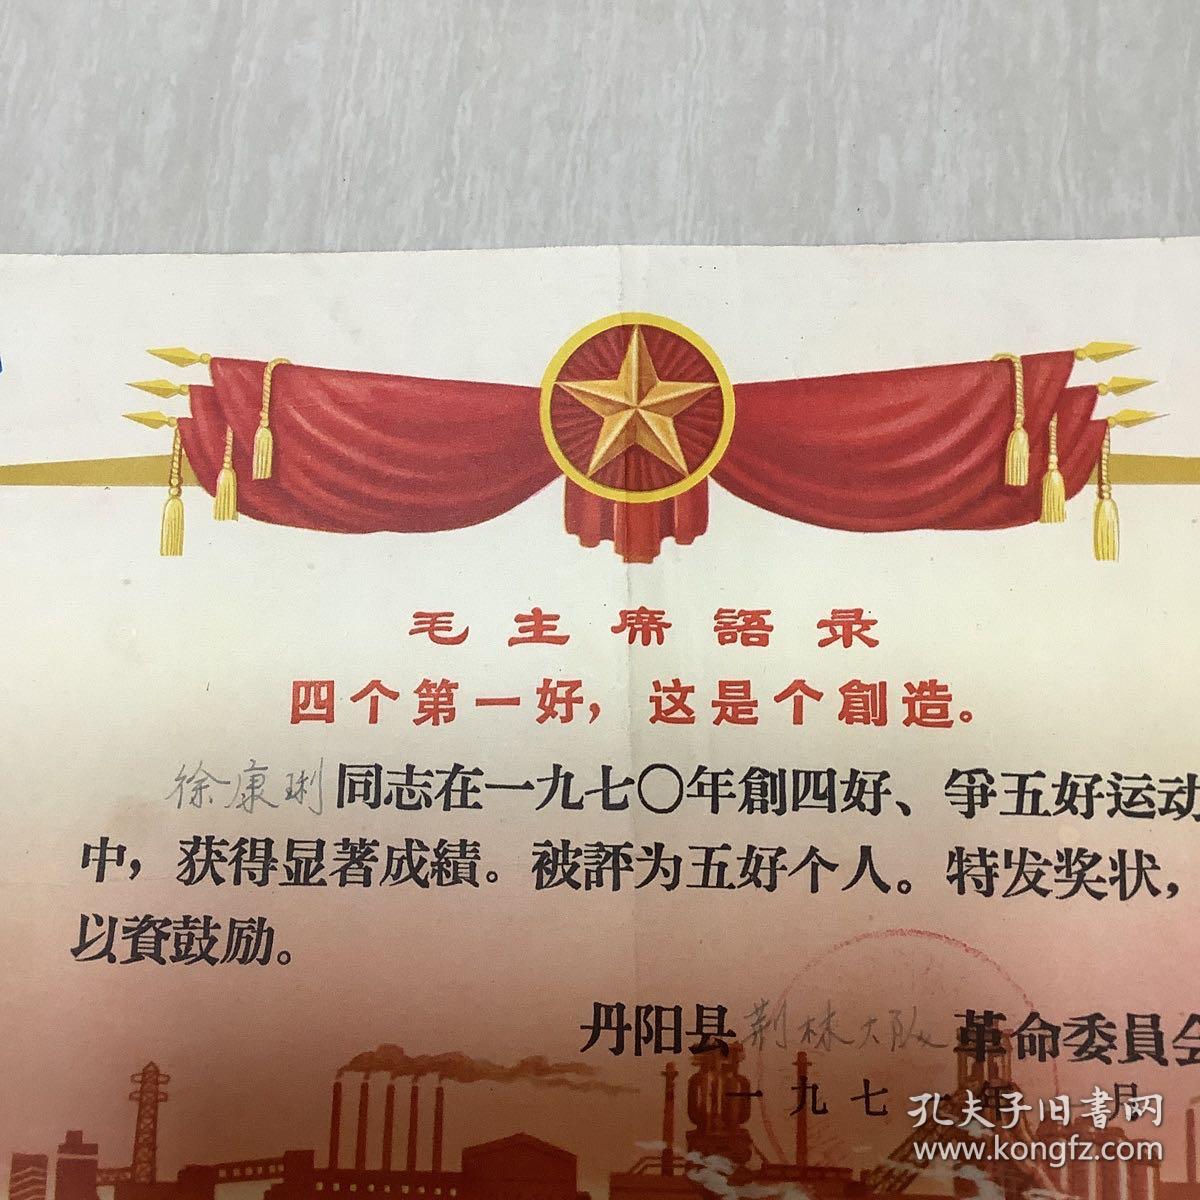 1971年 江苏丹阳县 荆林大队 革命委员会奖章。 徐康琍同志 被评为五好个人